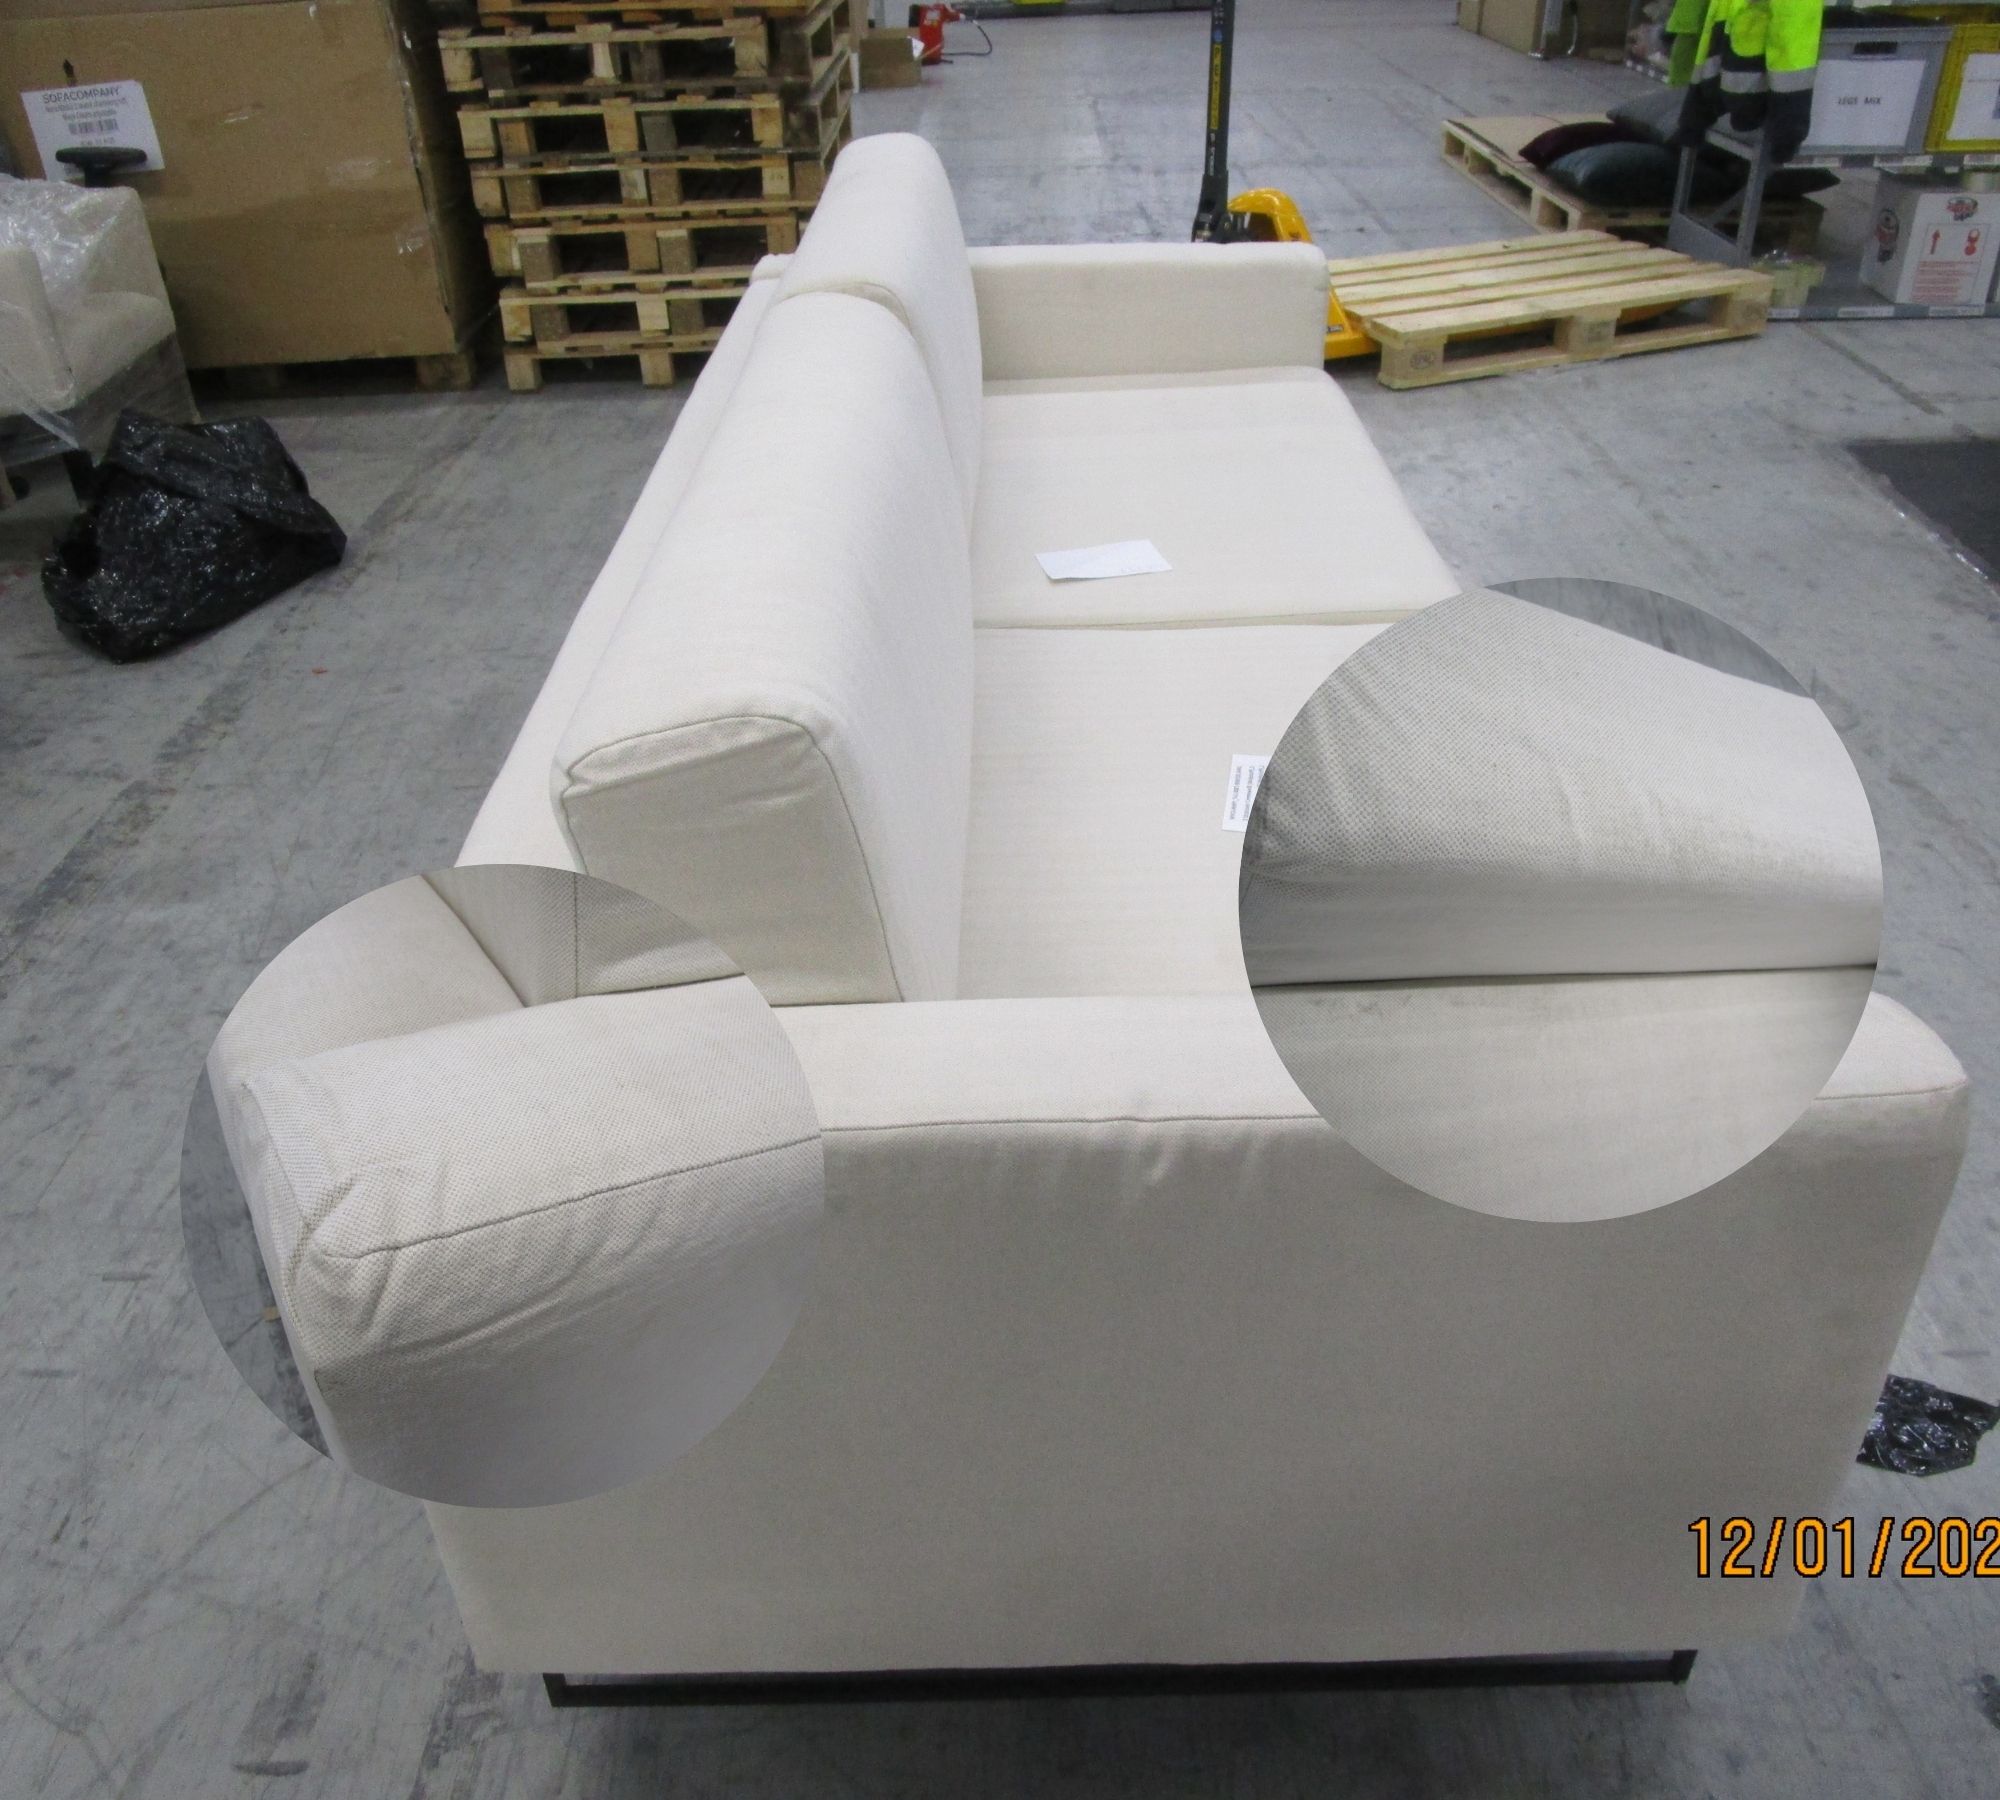 Tyme Sofa 2-Sitzer Webstoff Cremeweiß